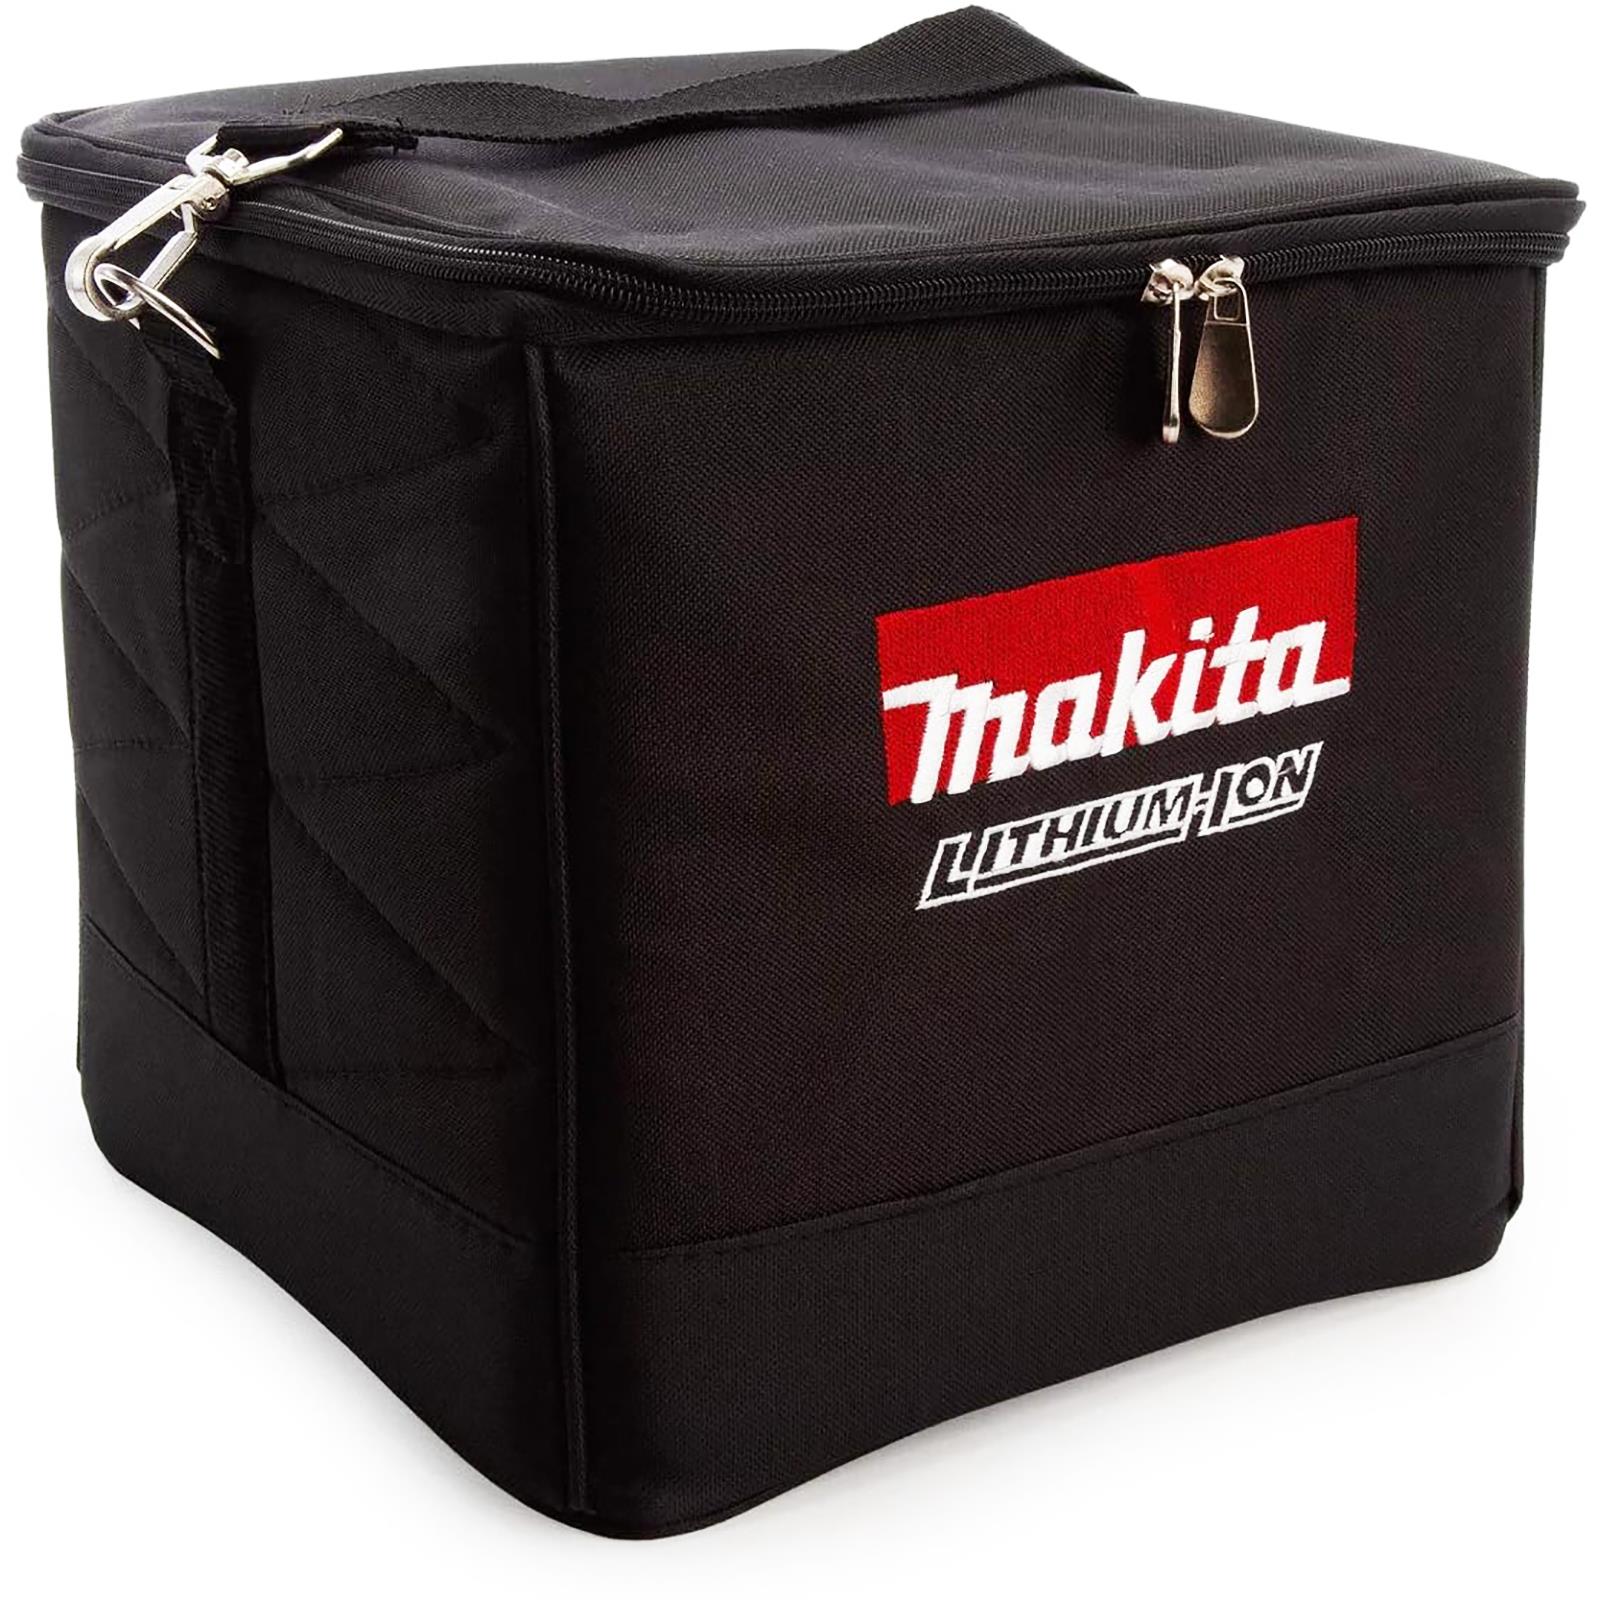 Makita Cube Tool Bag Black 225mm 831373-8